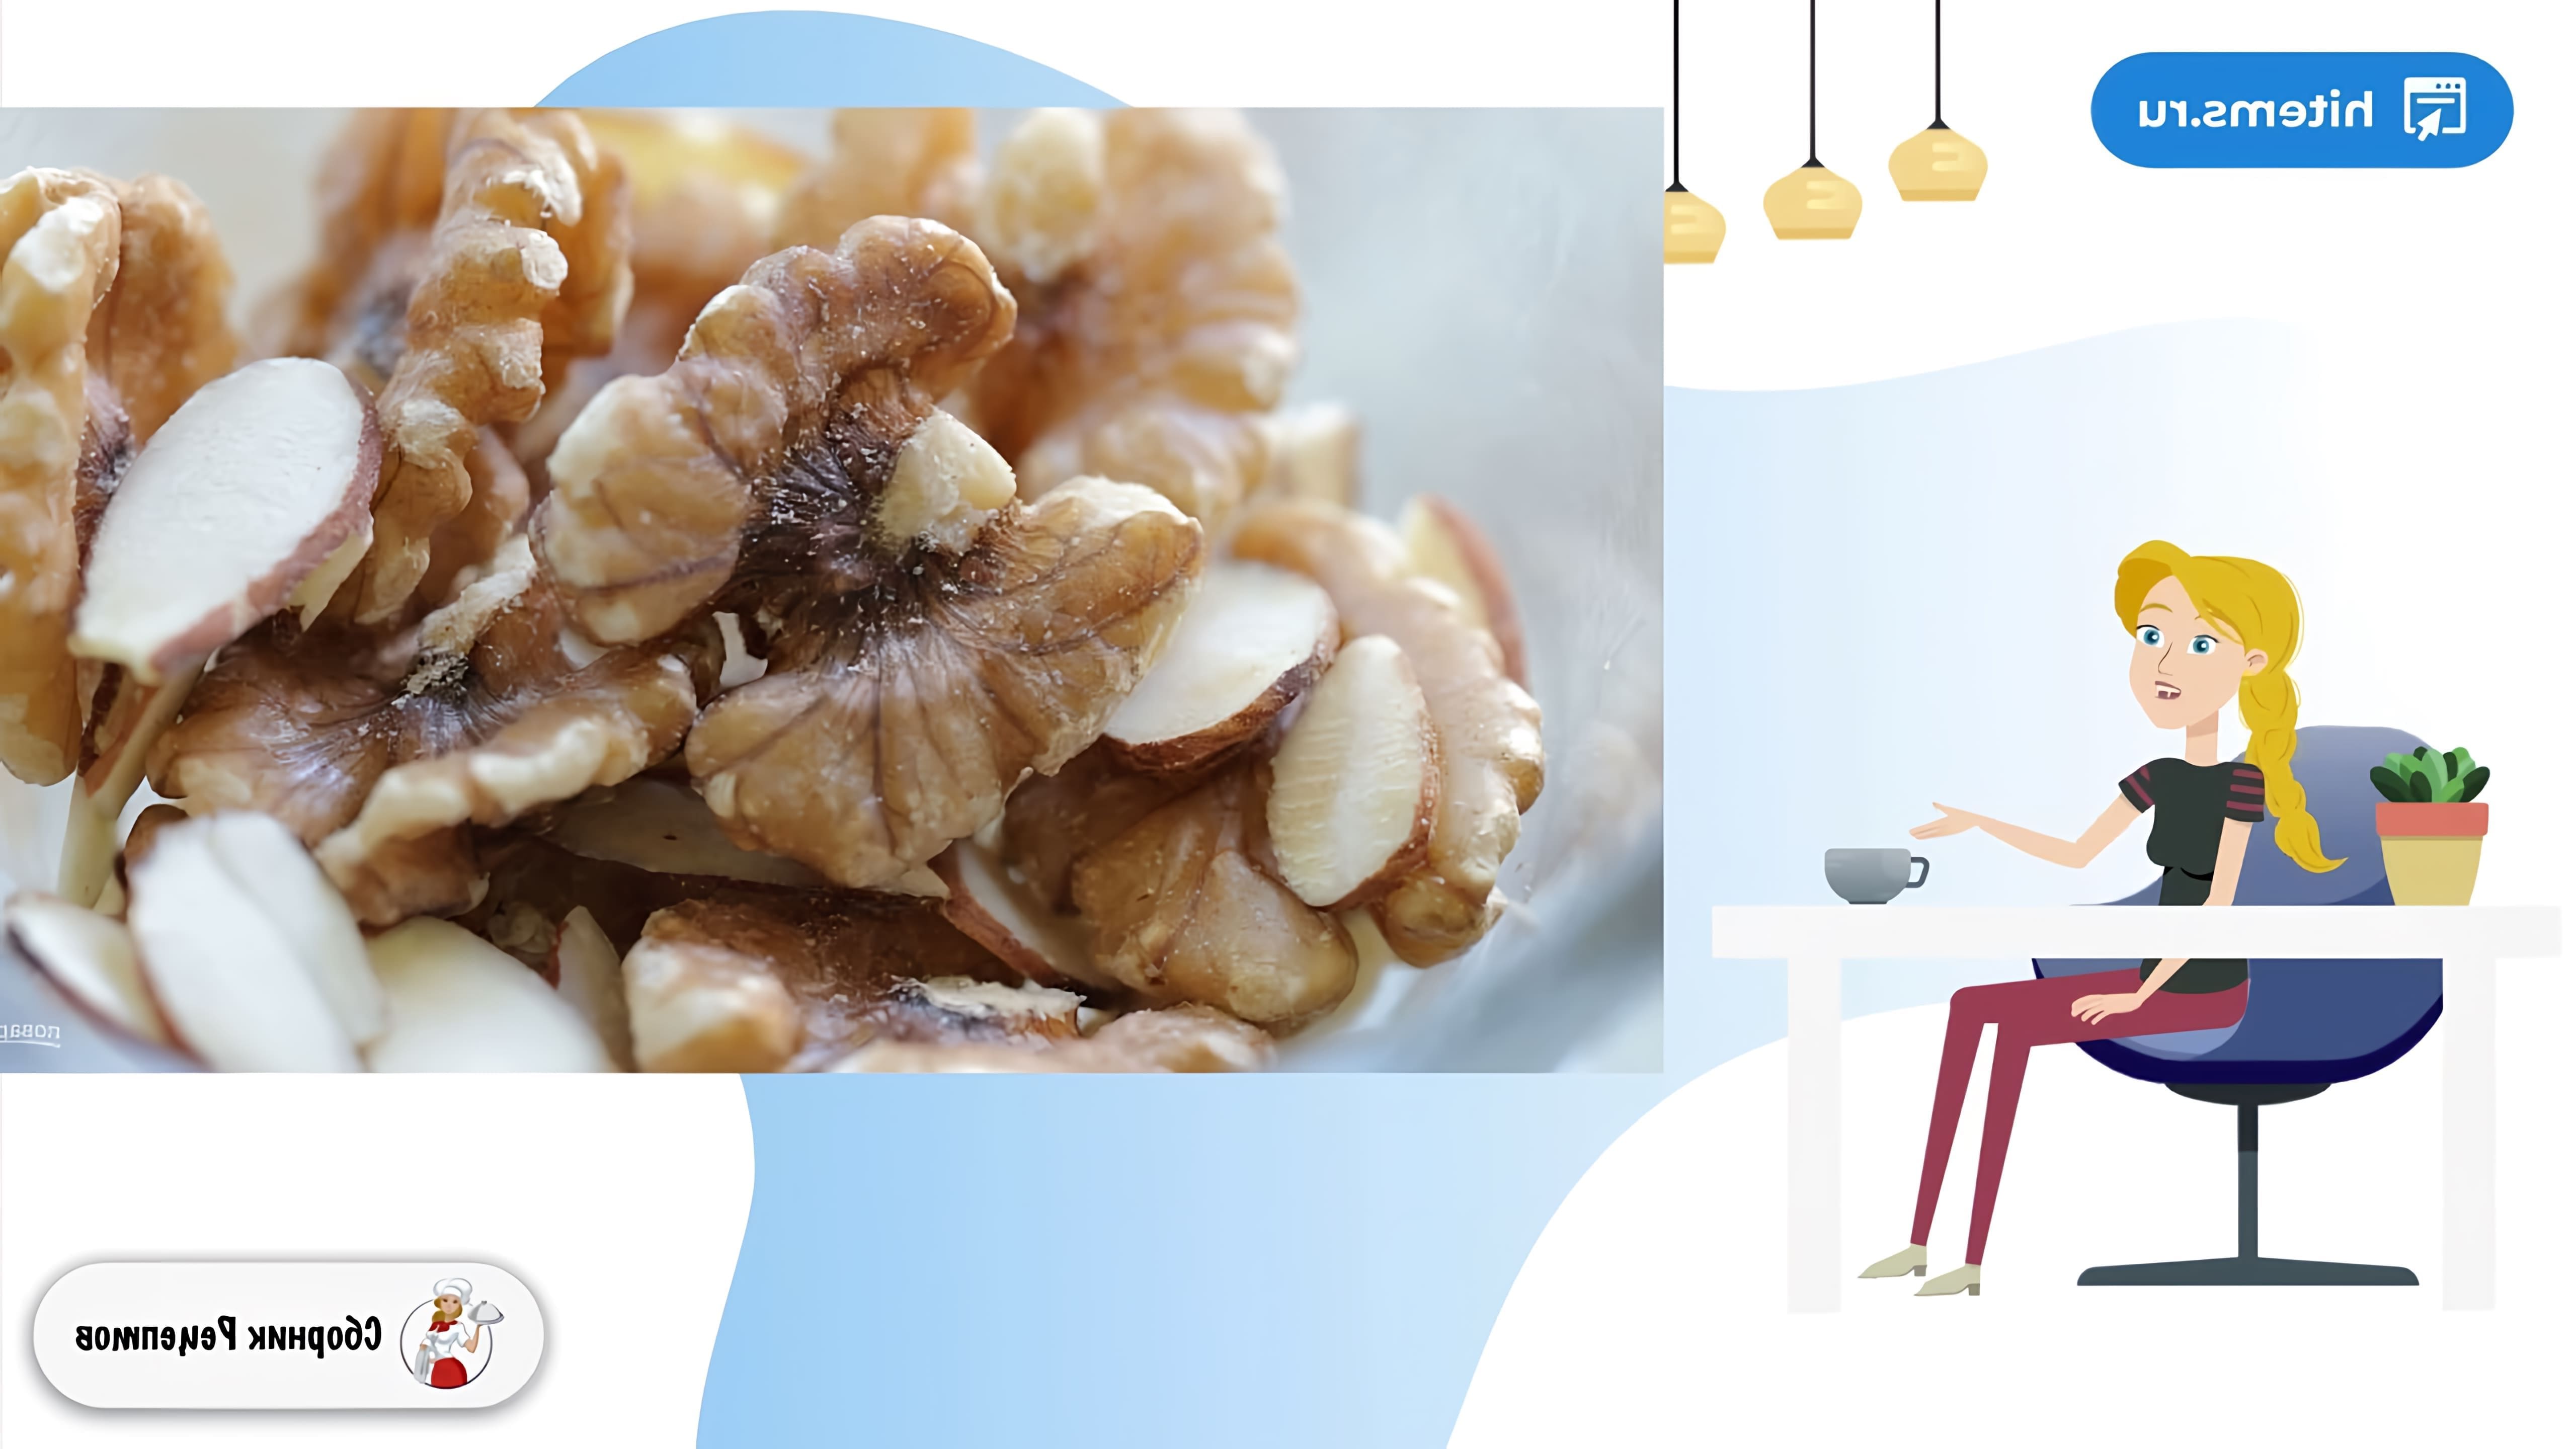 В этом видео демонстрируется рецепт приготовления яблочного штруделя с орехами, джемом и изюмом